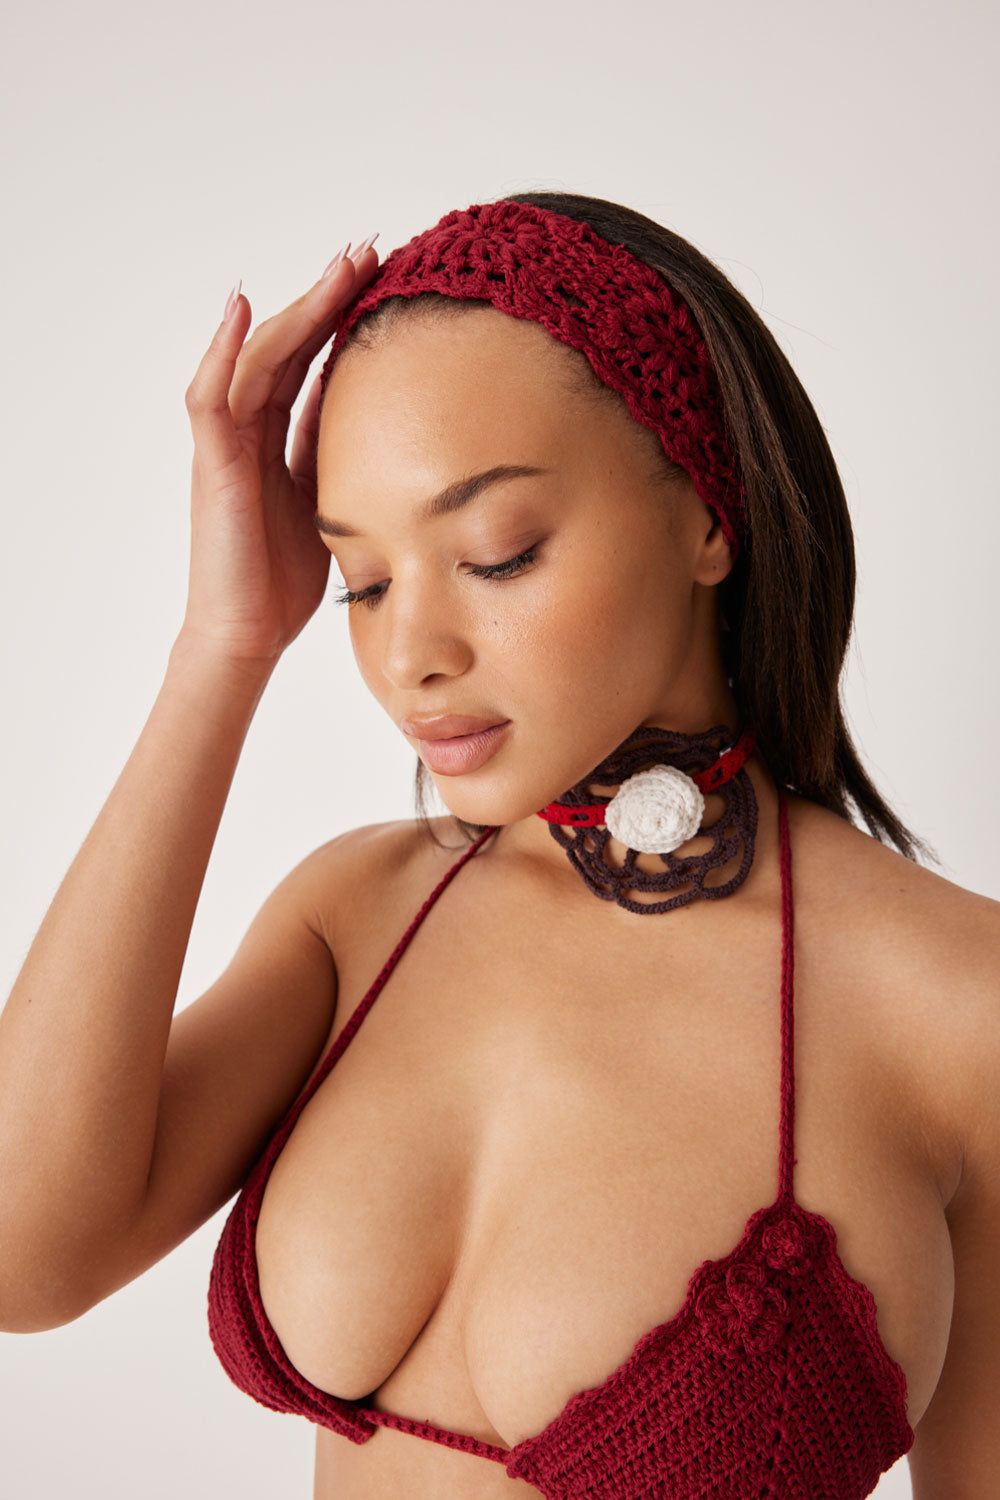 Amore Crochet Headband - Ruby